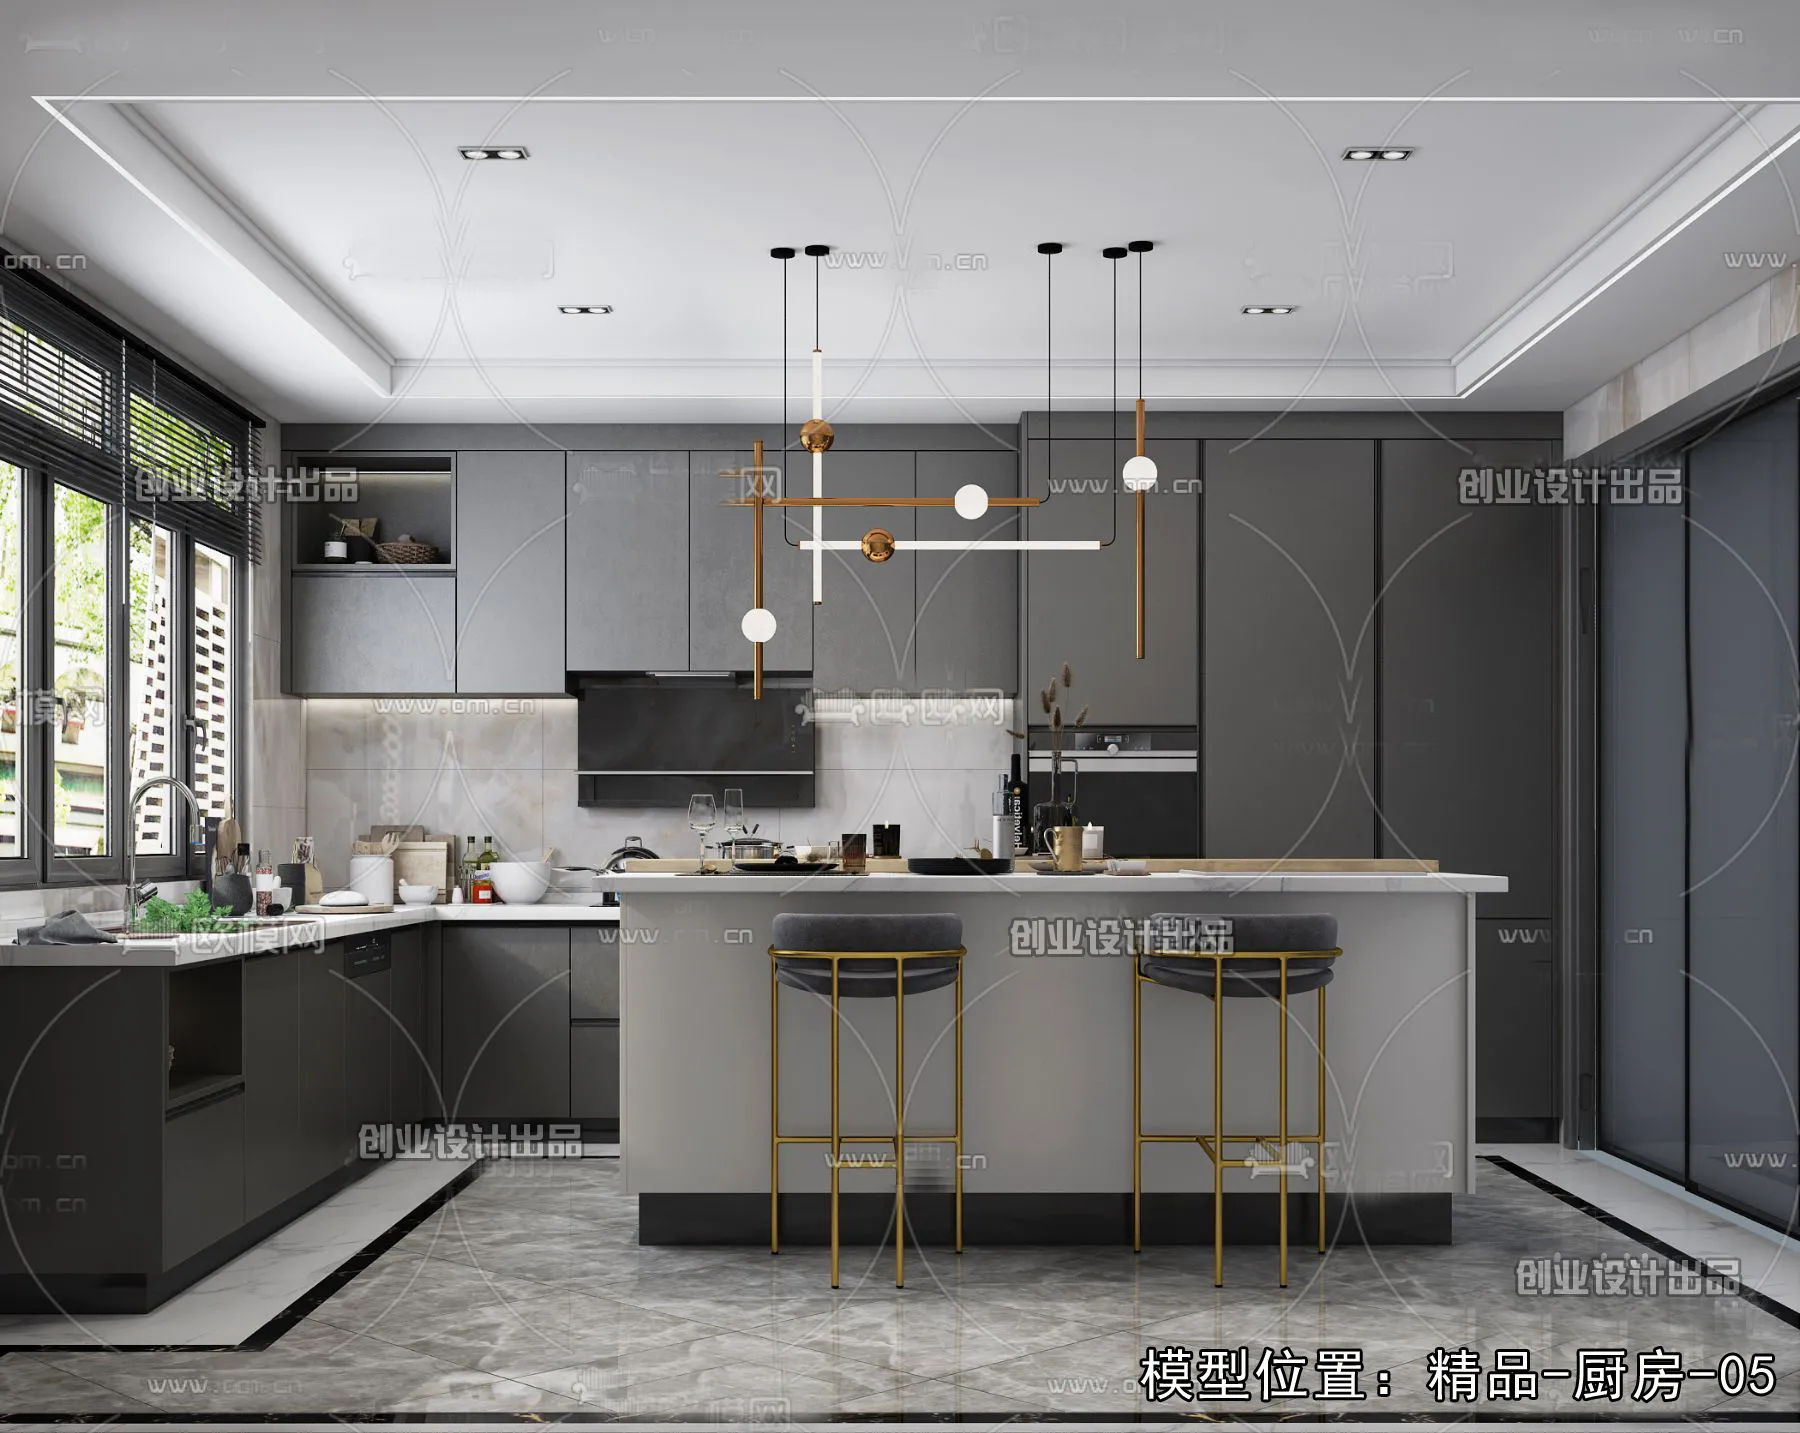 Kitchen – Modern Design – 3D66 – 3D Scenes – 018